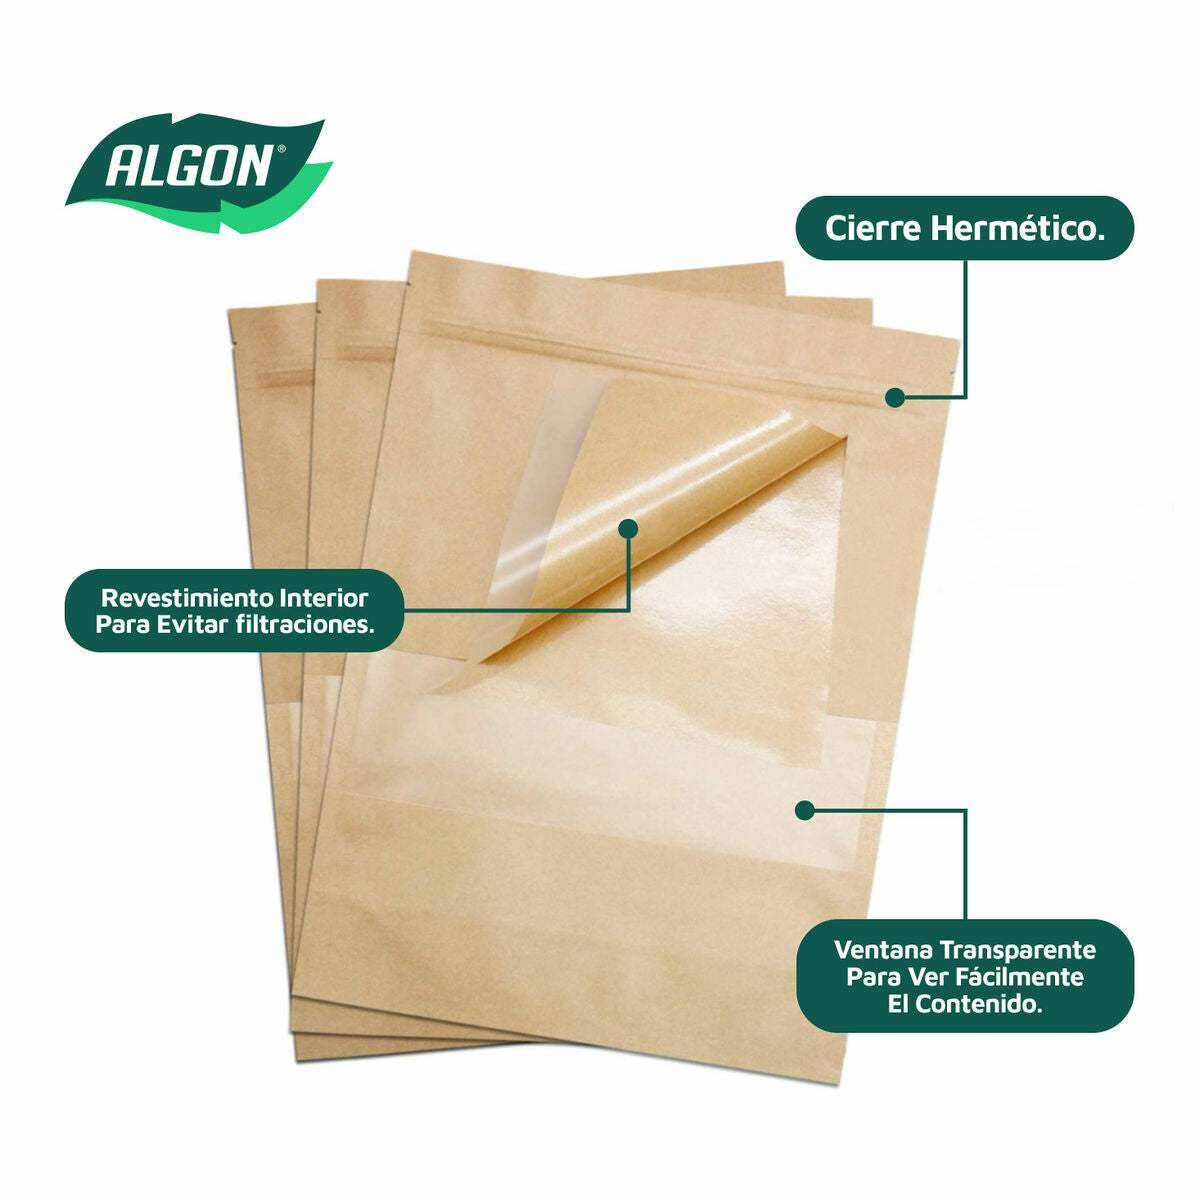 Ensemble de sacs alimentaires réutilisables Algon Fermeture hermétique 14 x 20 x 4 cm (36 Unités)